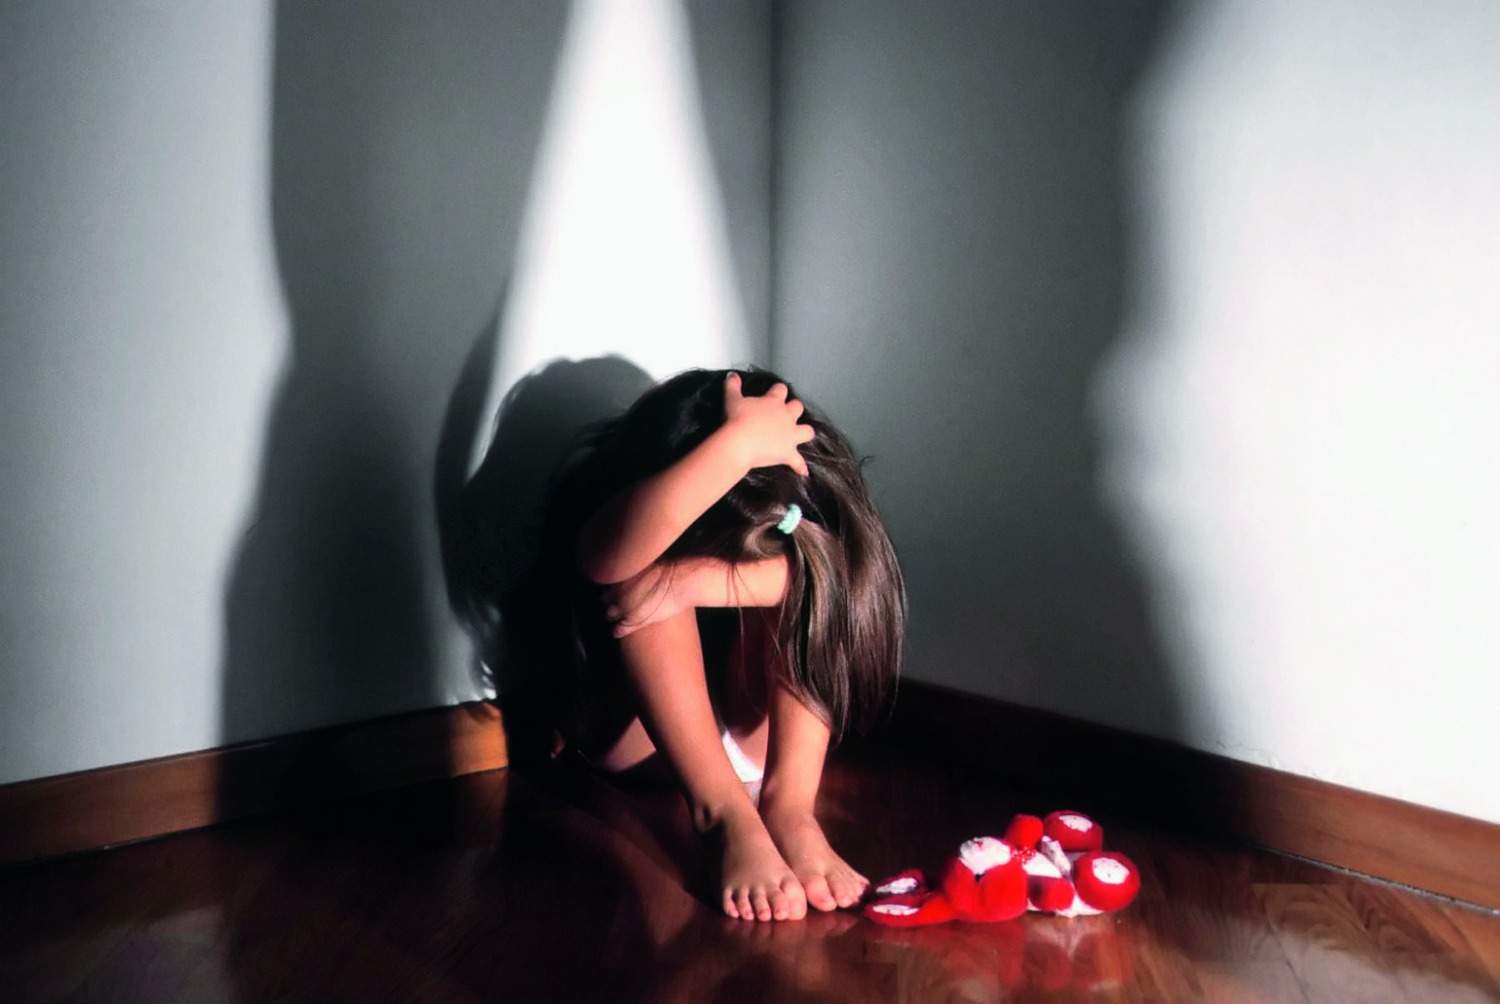 Житель Карелии 10 лет насиловал трех несовершеннолетних девочек и снимал порно | СТОЛИЦА на Онего